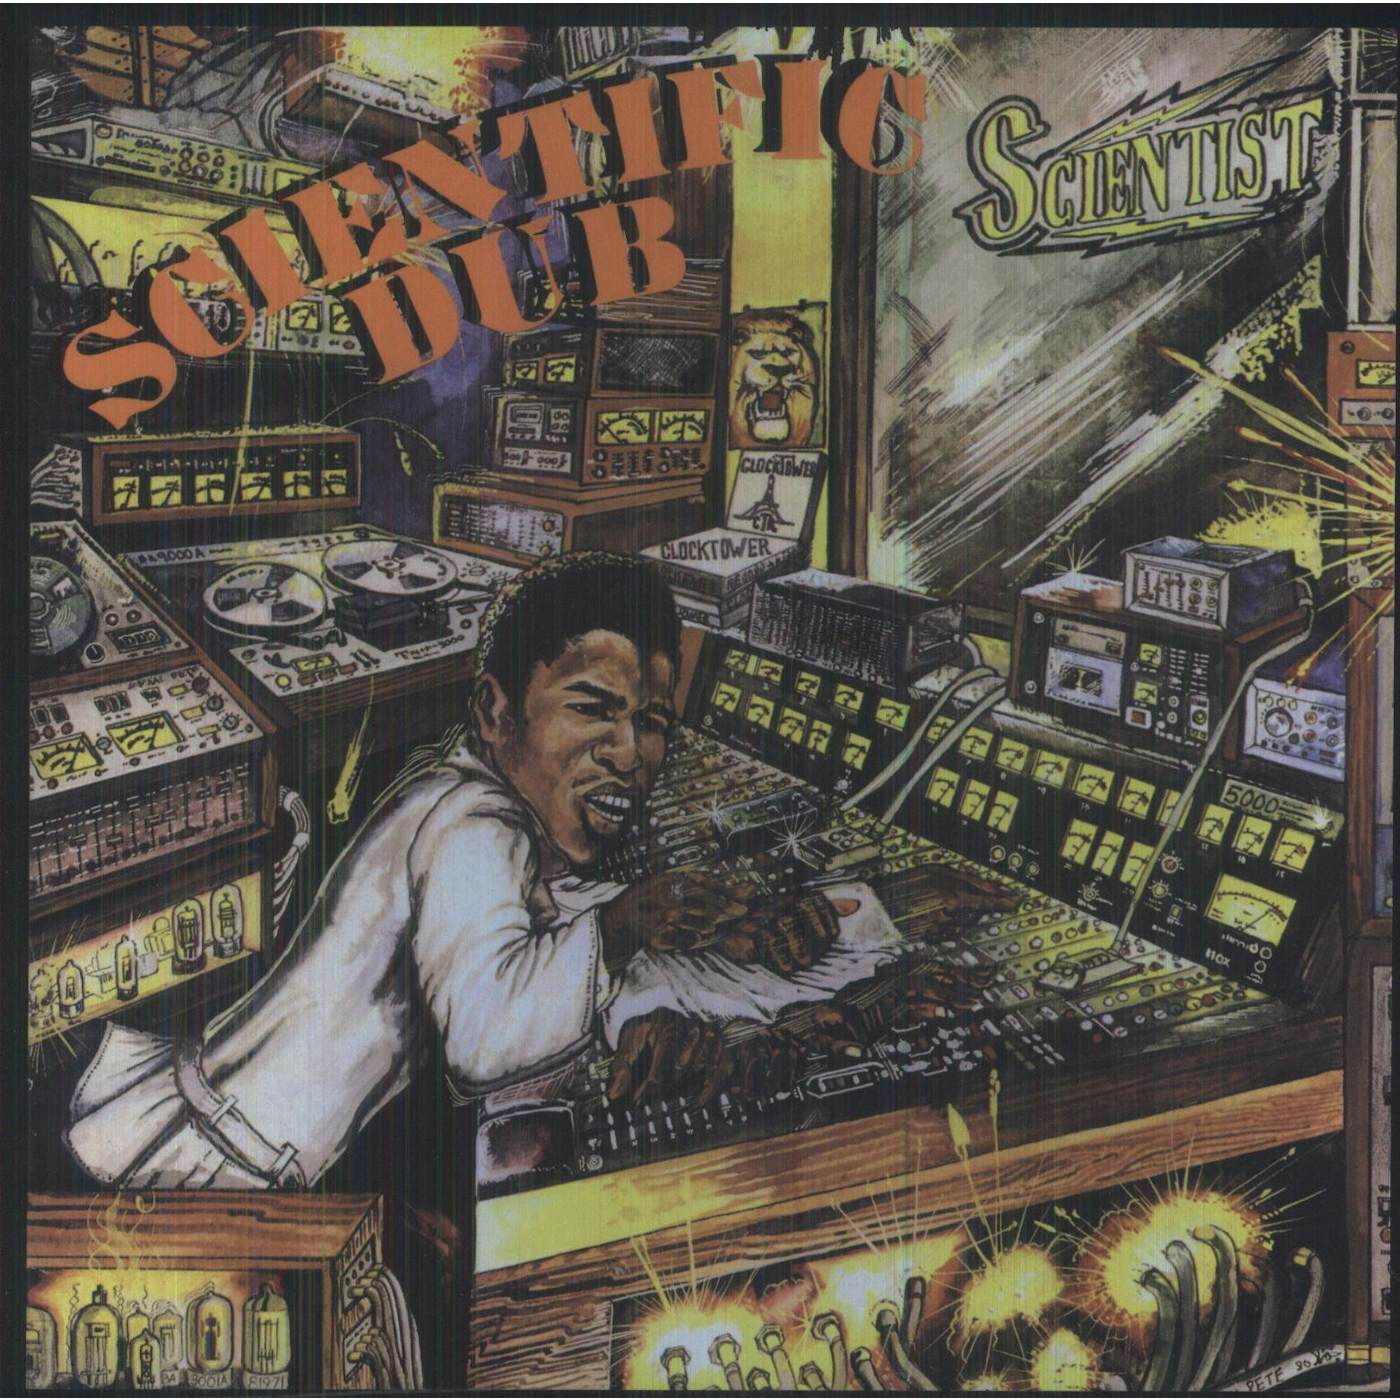 Scientist Scientific Dub Vinyl Record